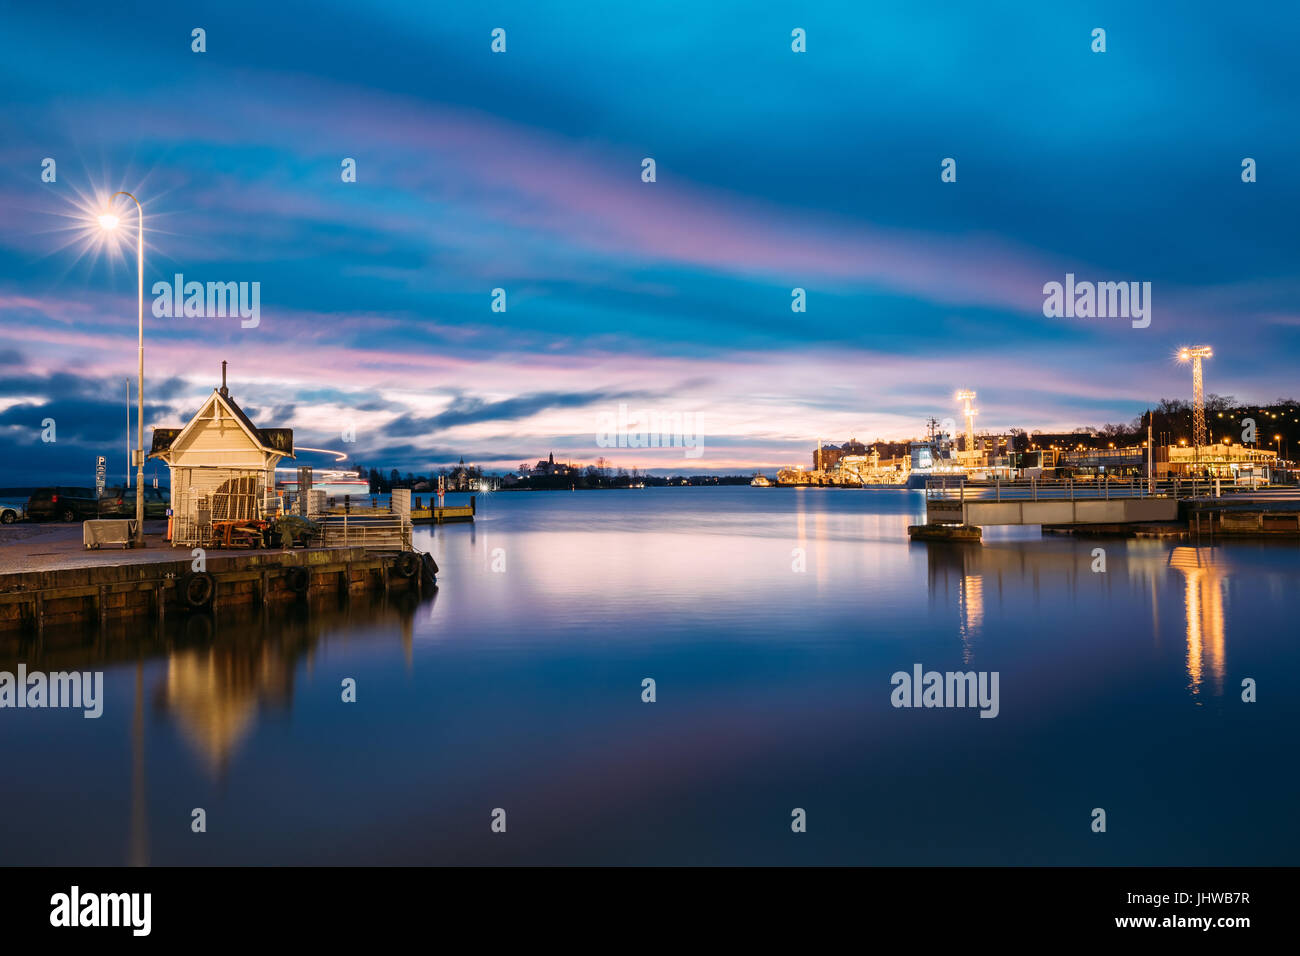 Helsinki, Finlandia. Paesaggio con città Pier, Jetty in inverno all'alba o al tramonto del tempo. Cielo blu riflessa nel mare tranquillo della superficie dell'acqua. Ormeggio in luce Foto Stock